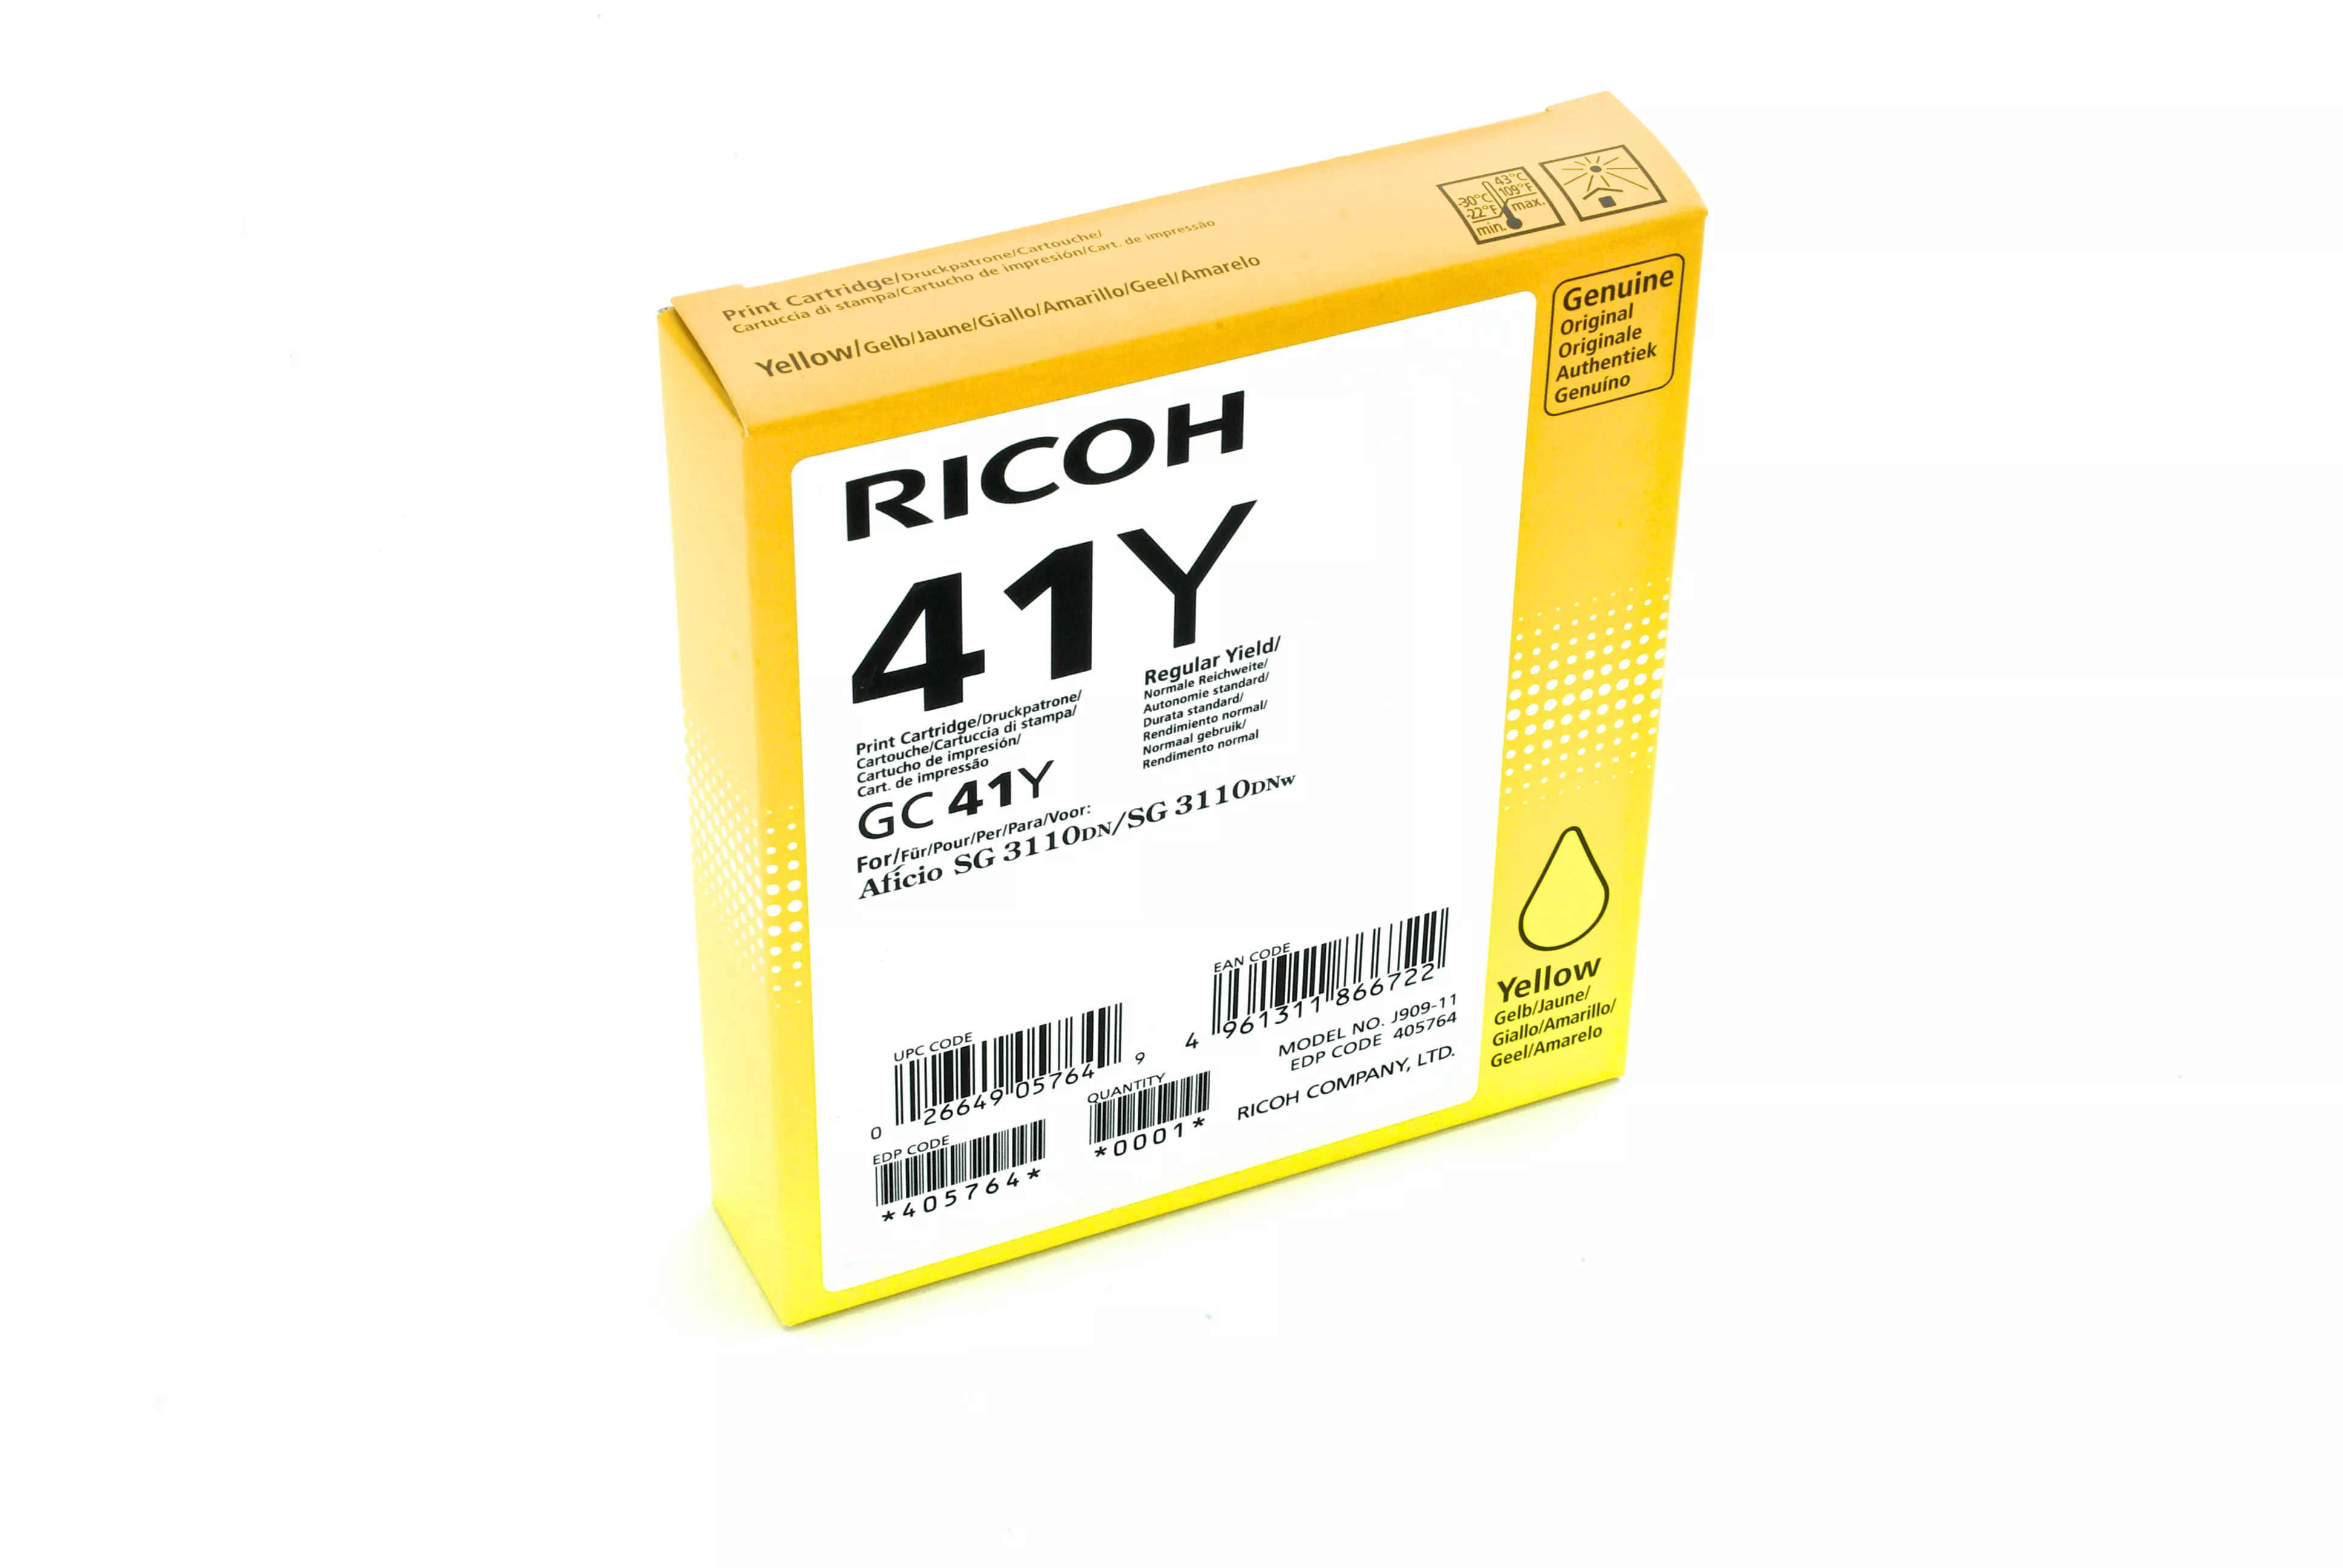 Achat Ricoh 405764 et autres produits de la marque Ricoh